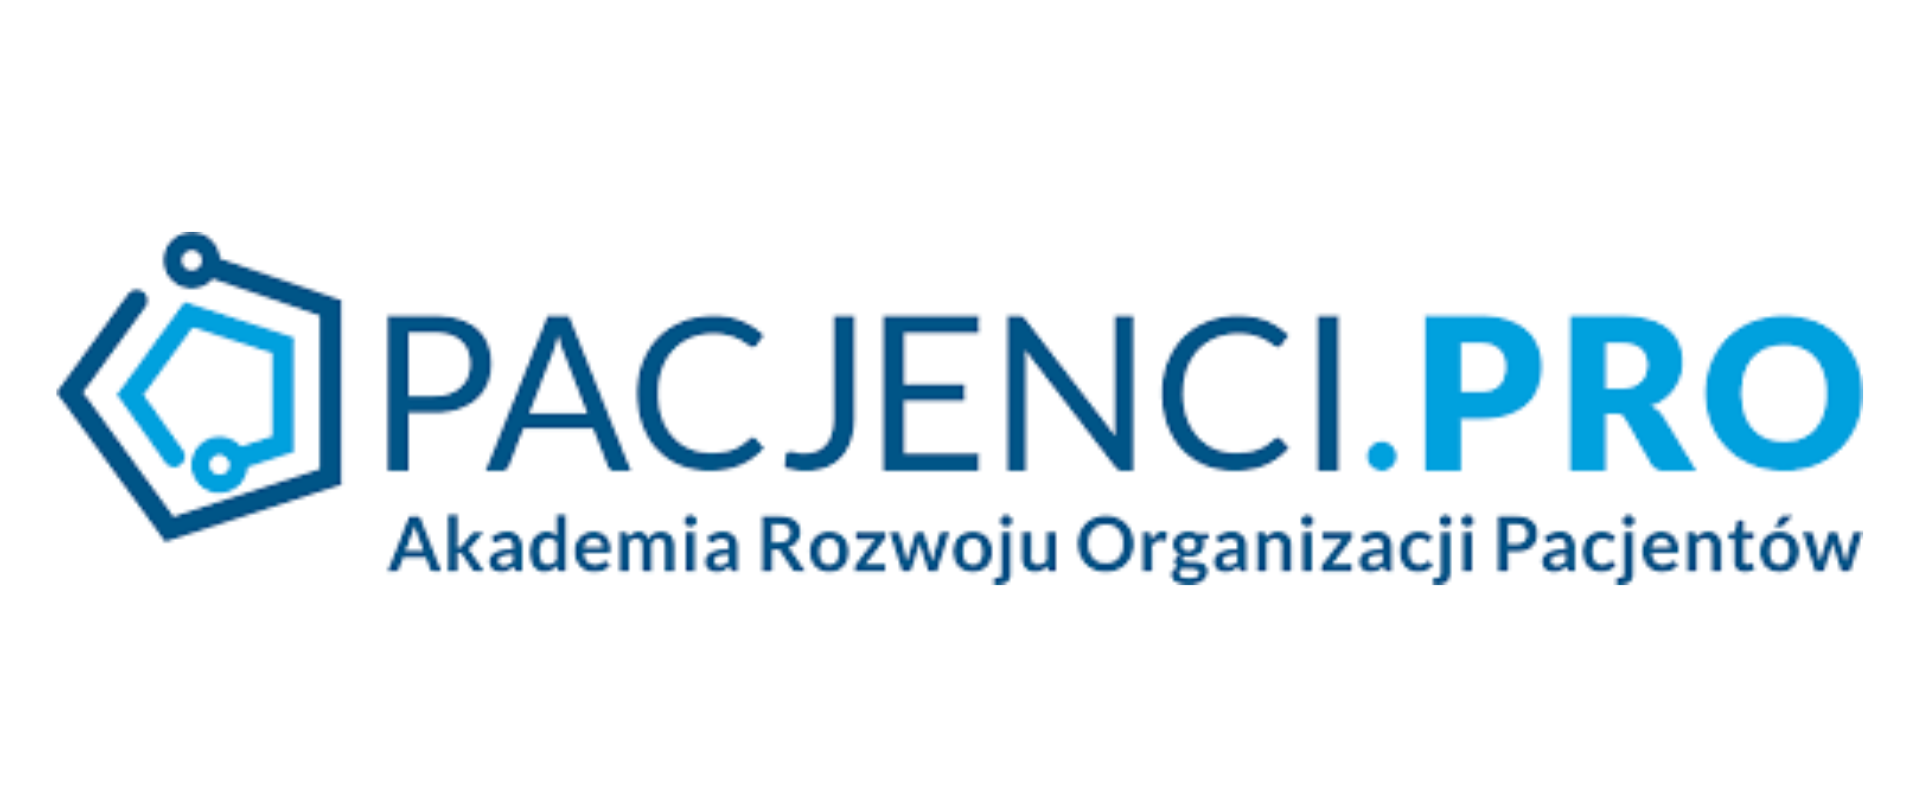 logo Pacjenci,PRO Akademia Rozwoju Organizacji Pacjentów